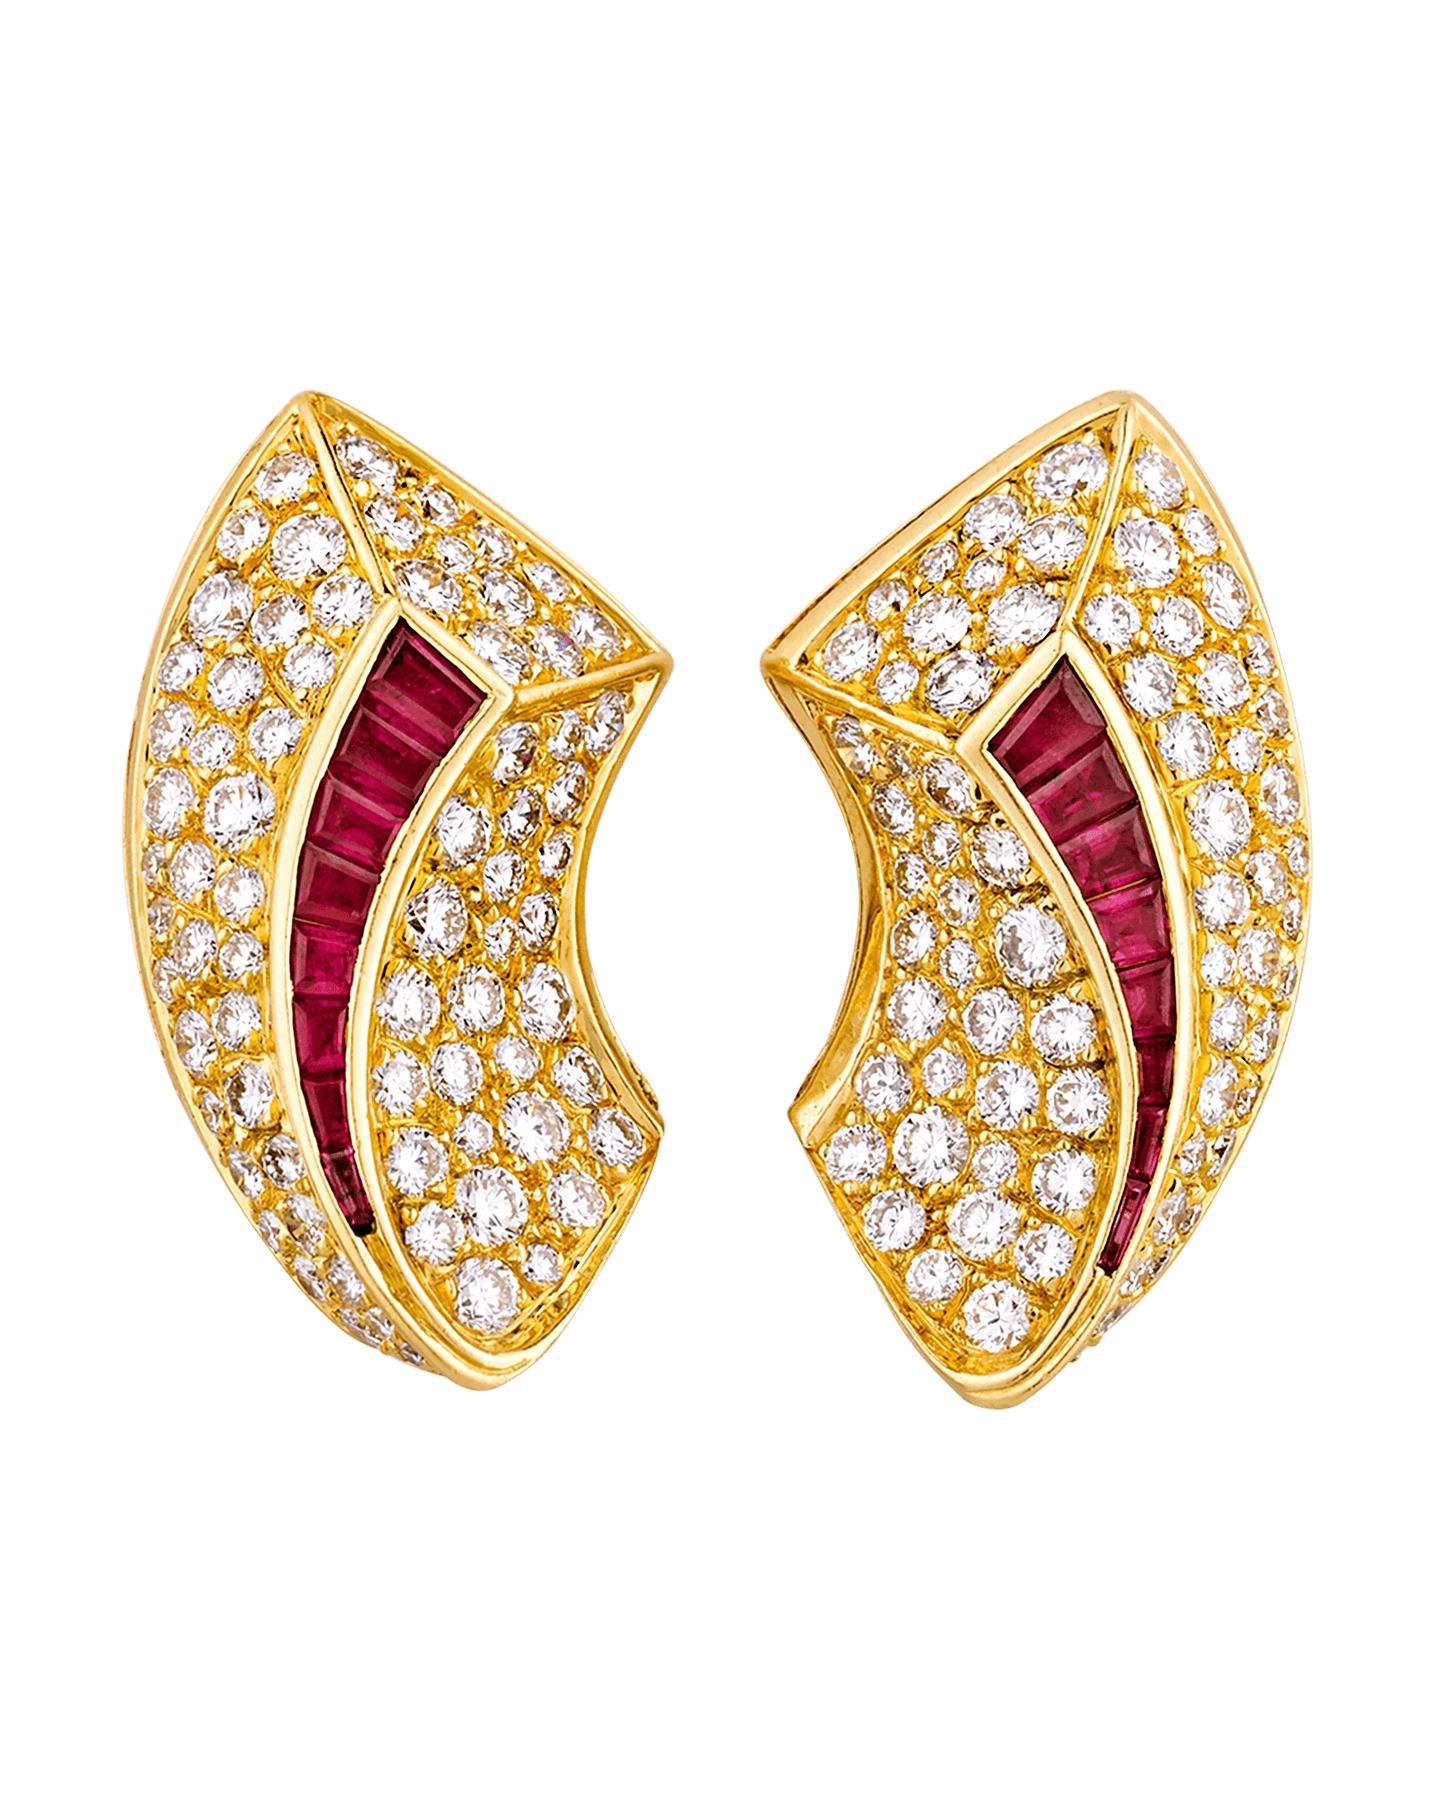 Emerald Cut Van Cleef & Arpels Diamond and Ruby Earrings, 6.66 Carat